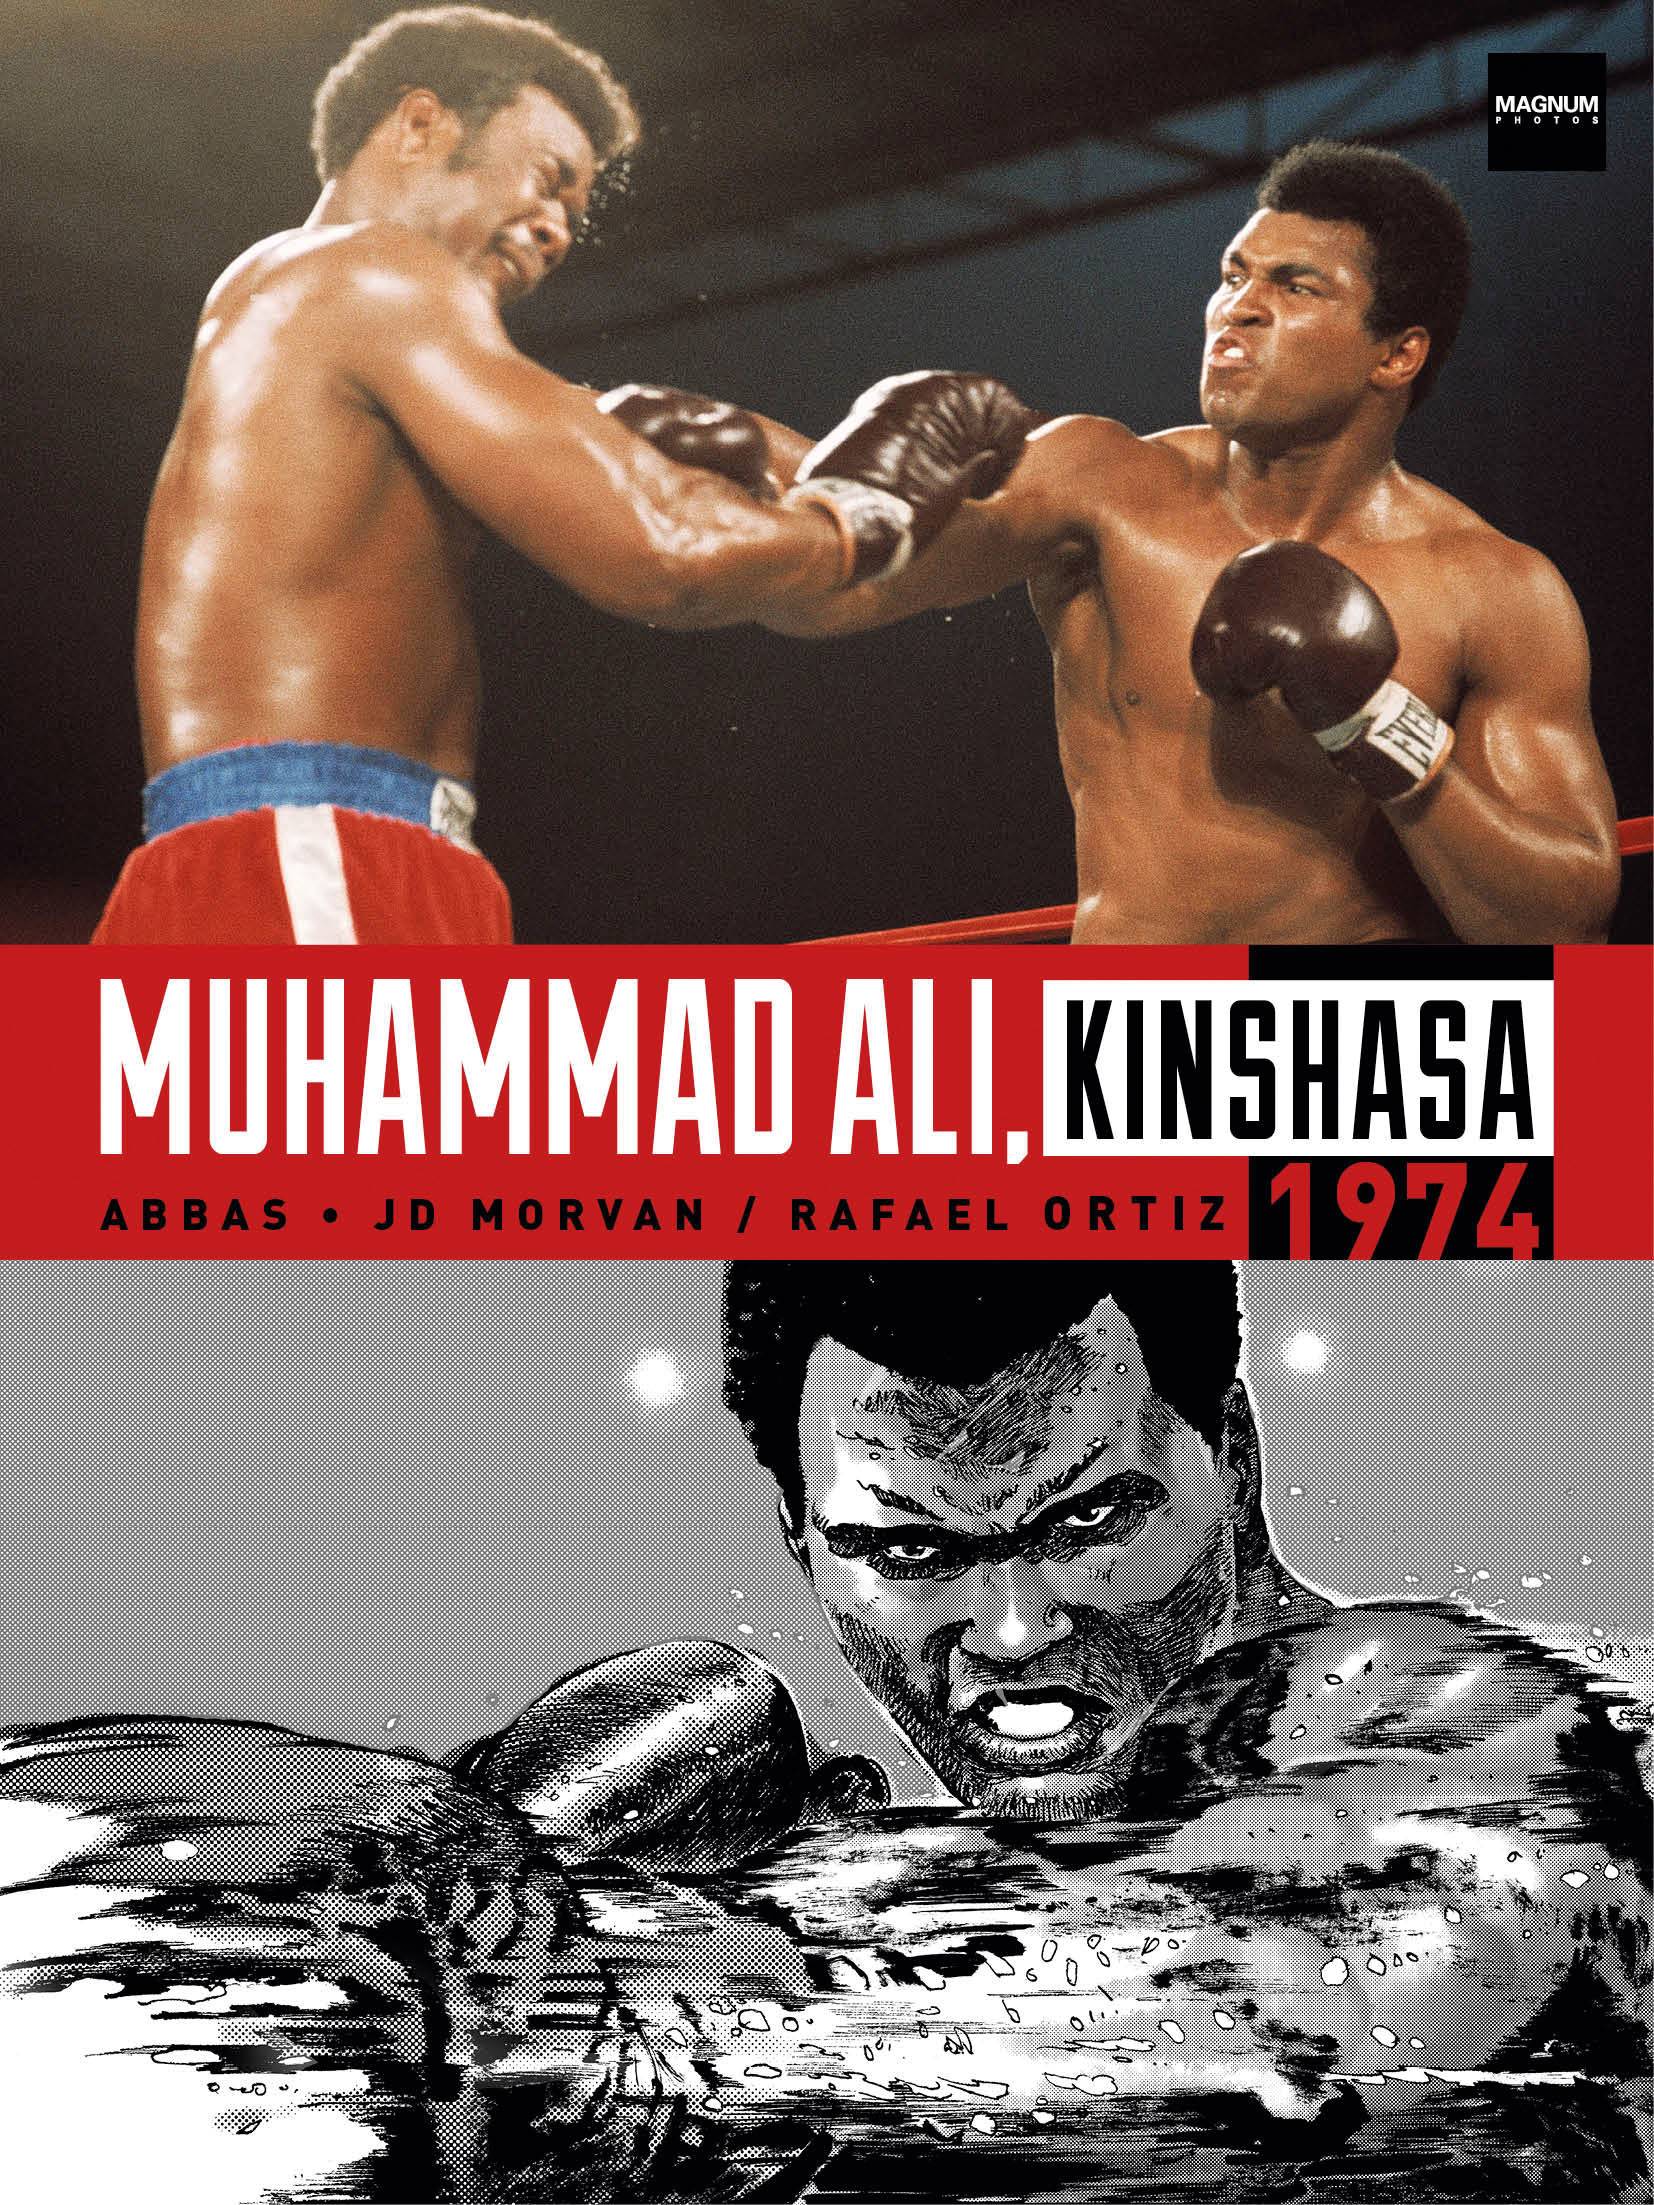 MUHAMMAD ALI KINSHASA 1974 HC (MR)